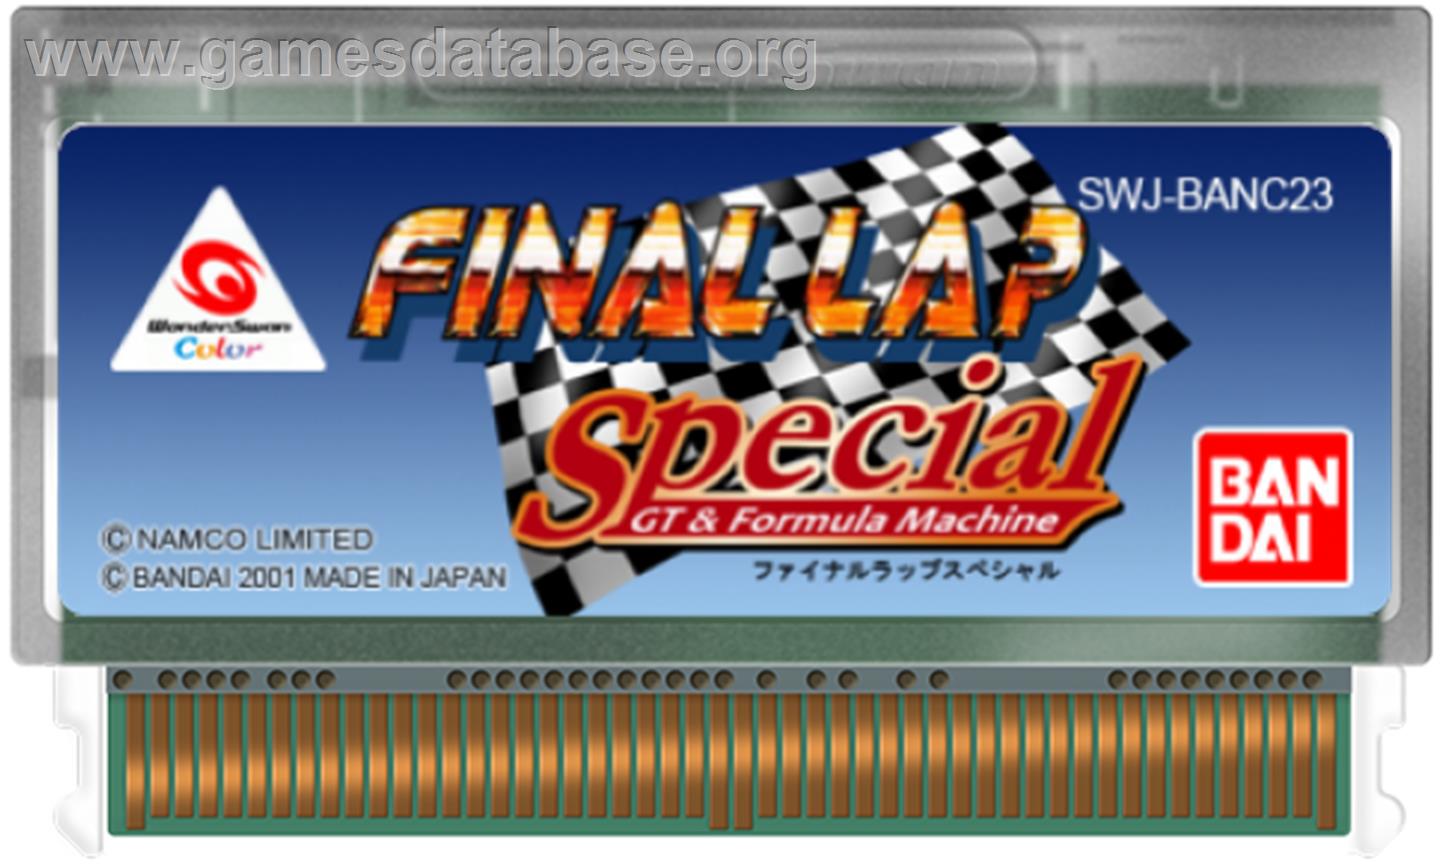 Final Lap Special - Bandai WonderSwan Color - Artwork - Cartridge